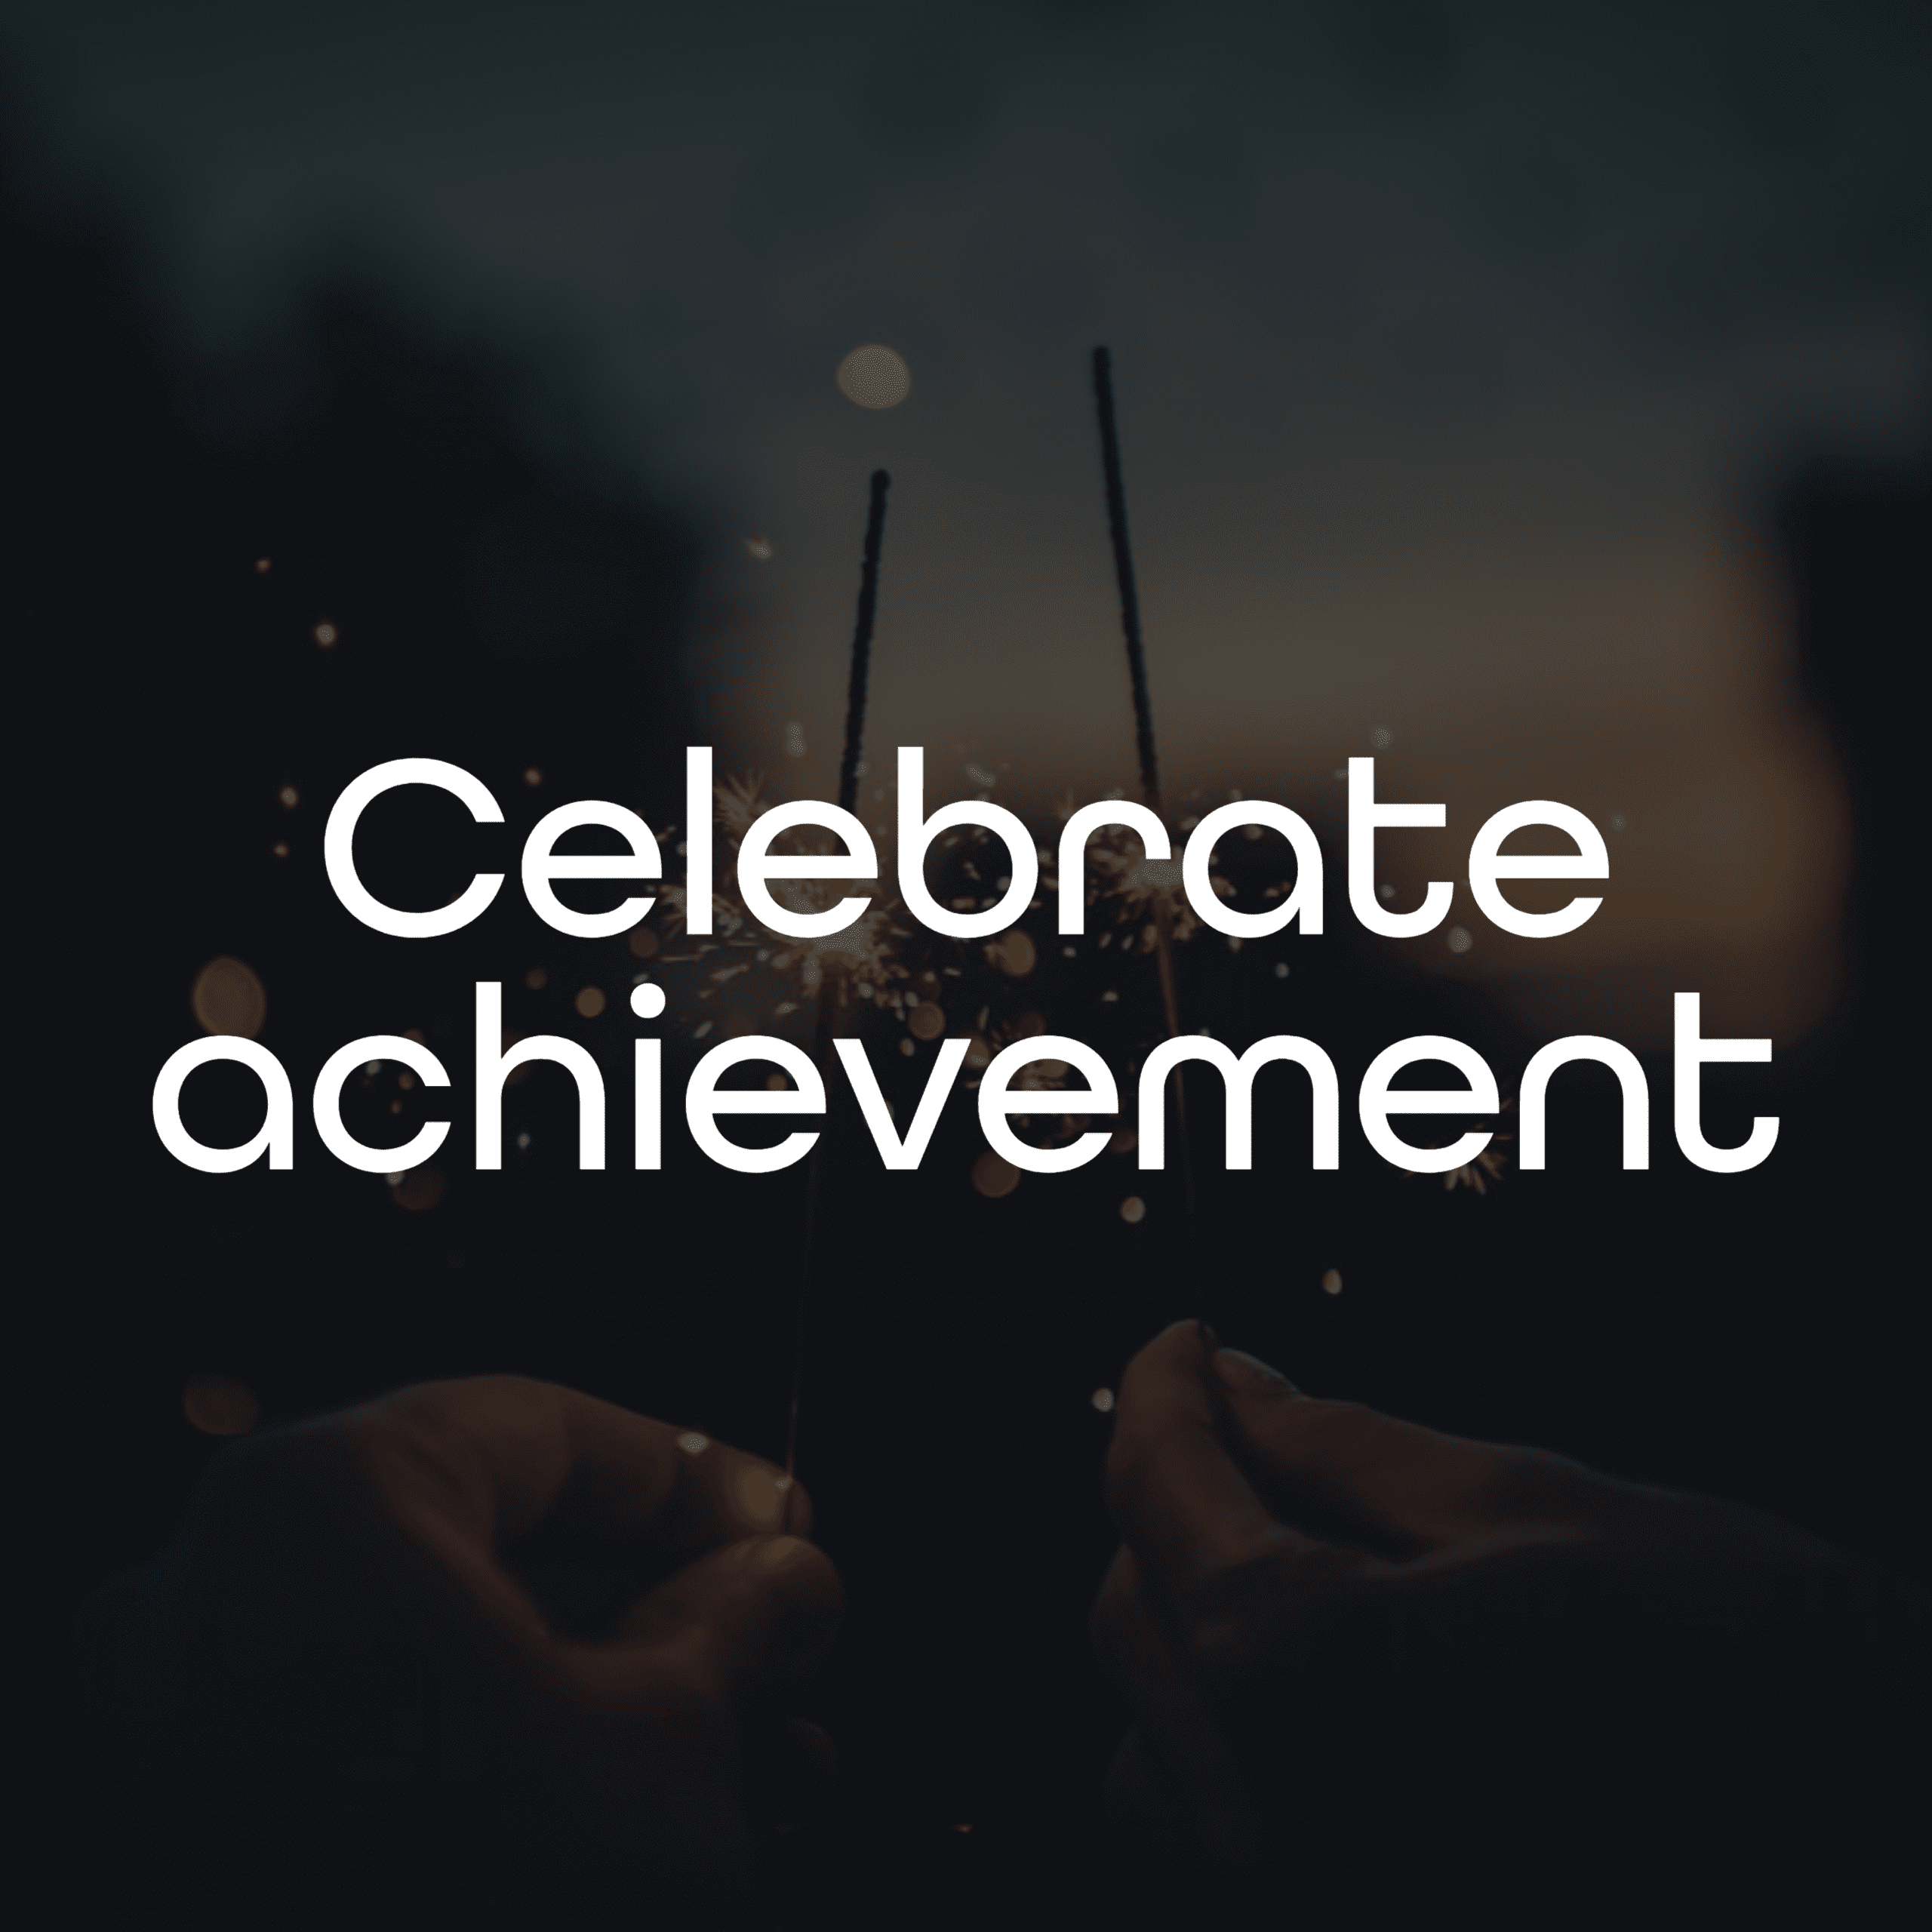 Celebrate achievement